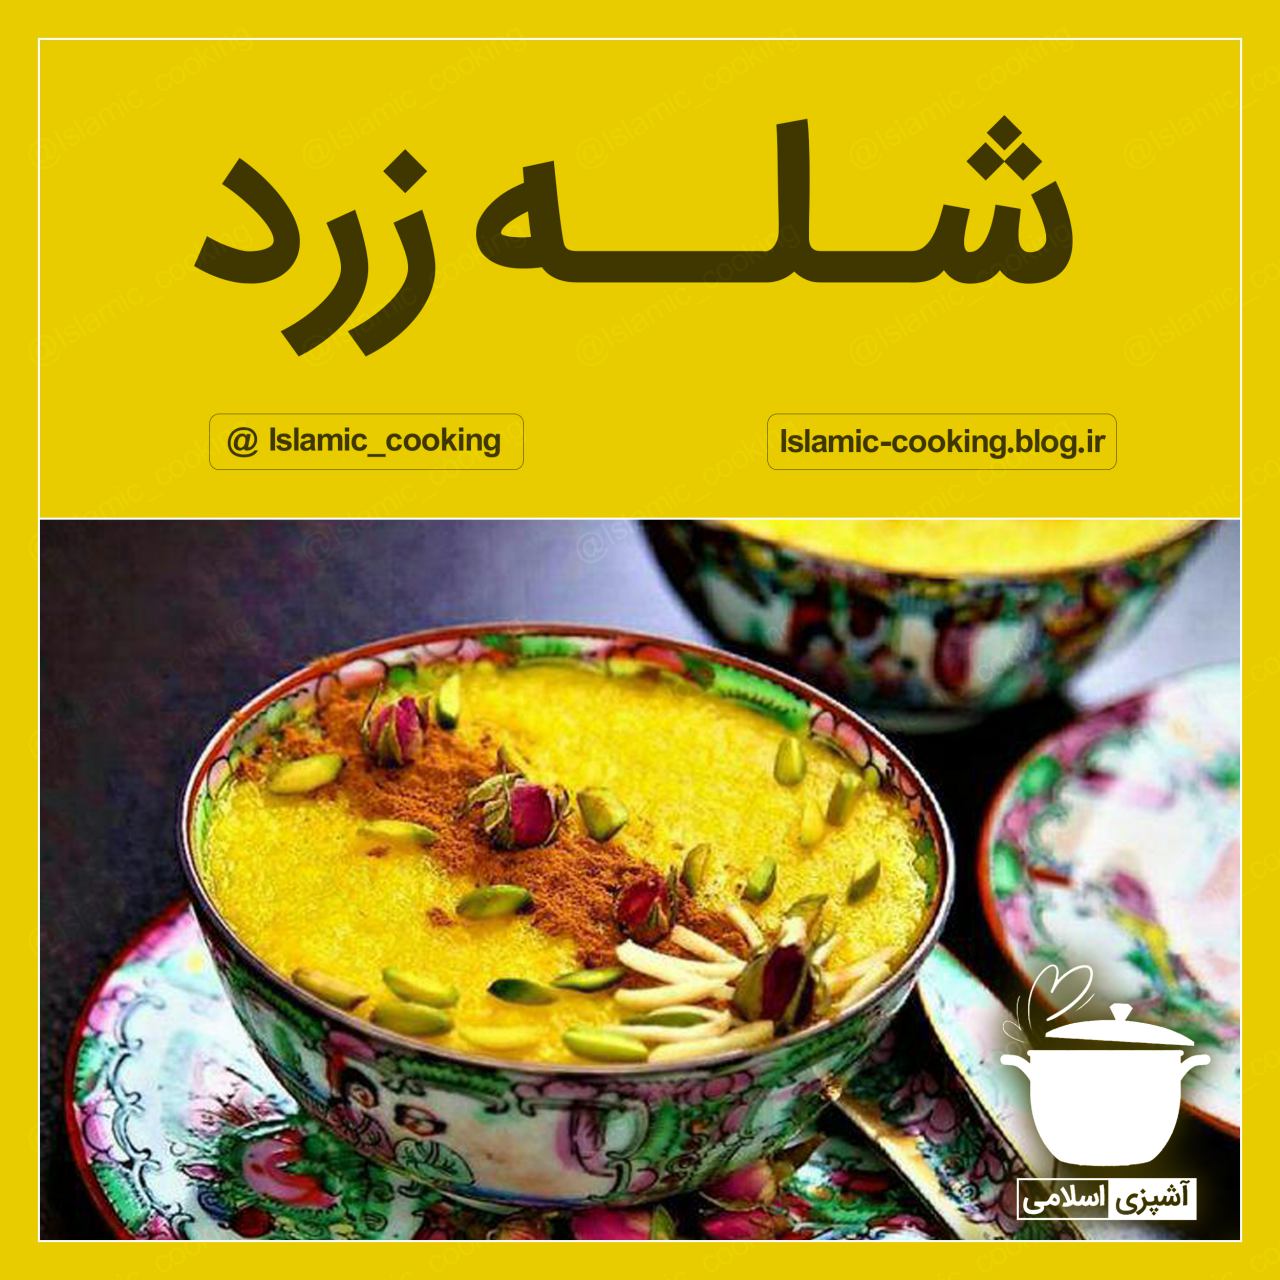 شله زرد،طرز تهیه شله زرد،شیرینی پزی،آشپزی،آشپزی اسلامی،طب اسلامی